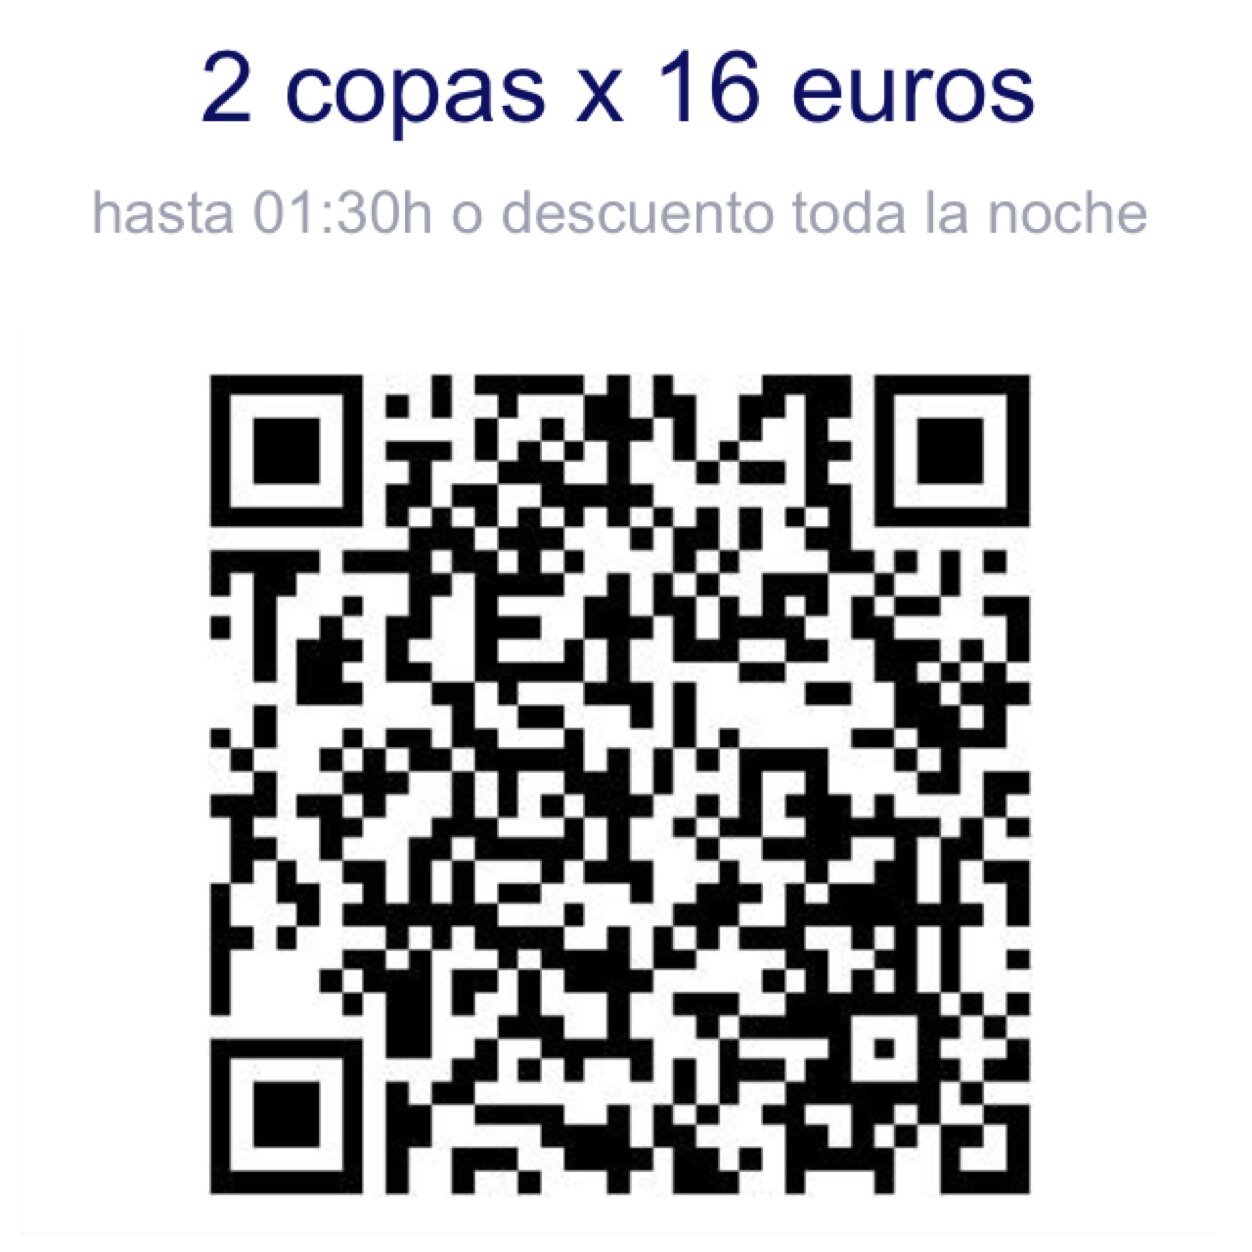 RRPP Kapital Madrid. Whatsapp 630558471